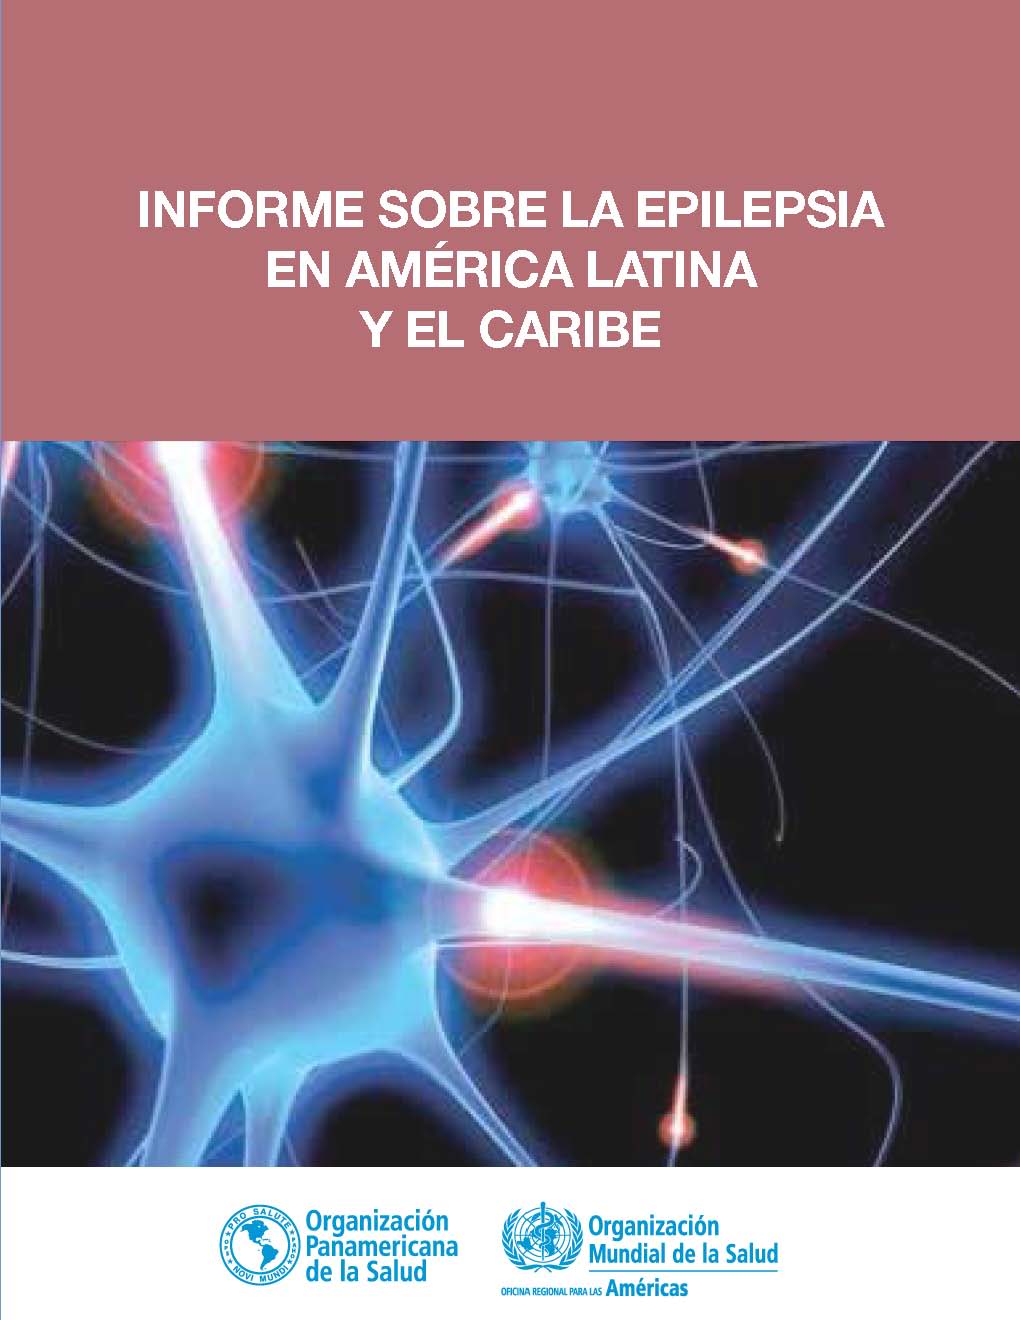 Informe sobre la Epilepsia en América Latina y el Caribe, Washington, DC, 2013 